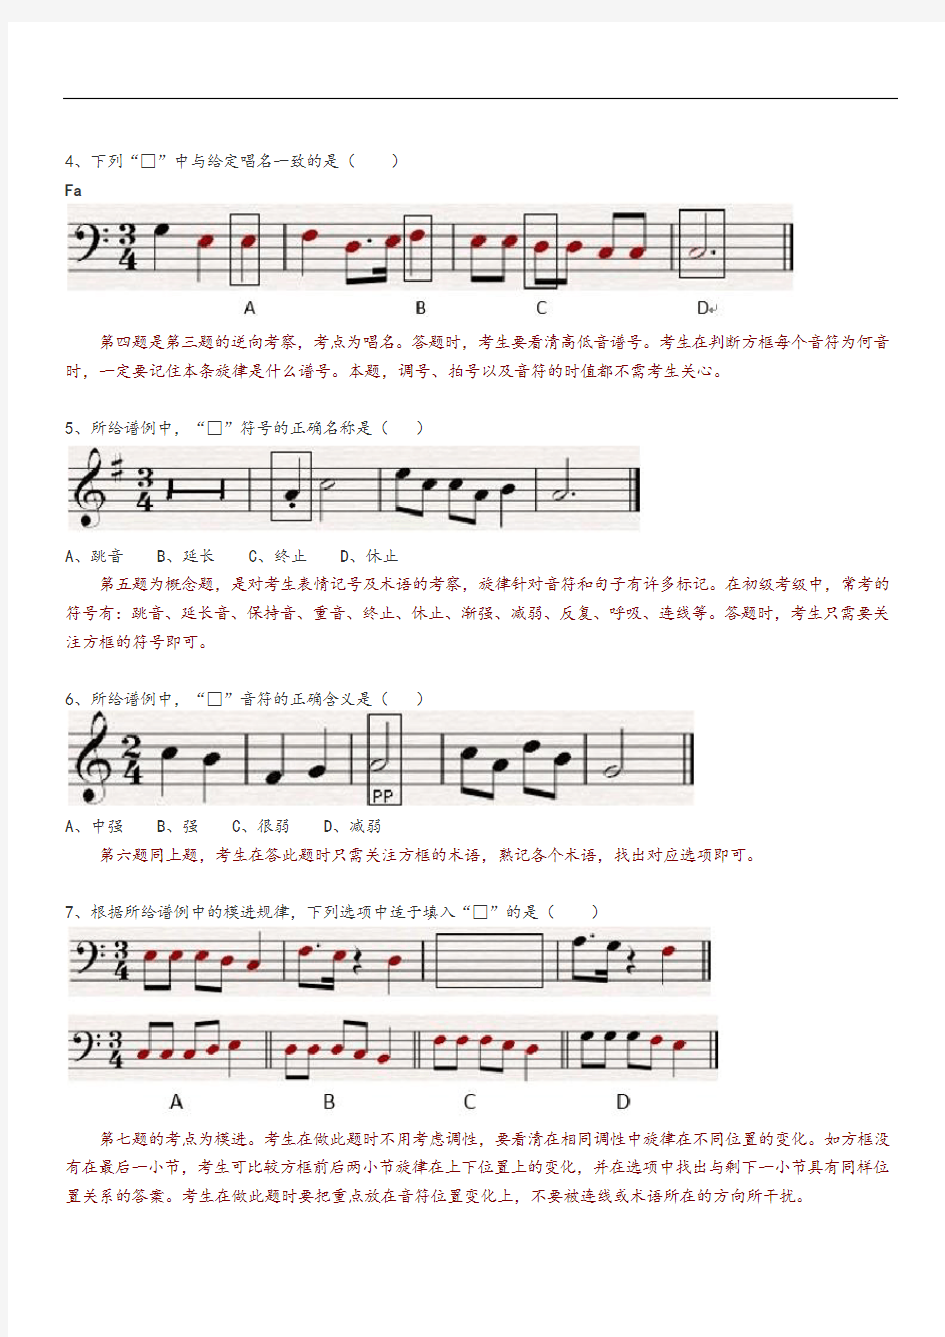 2014年中央音乐学院音基考试模拟考试卷